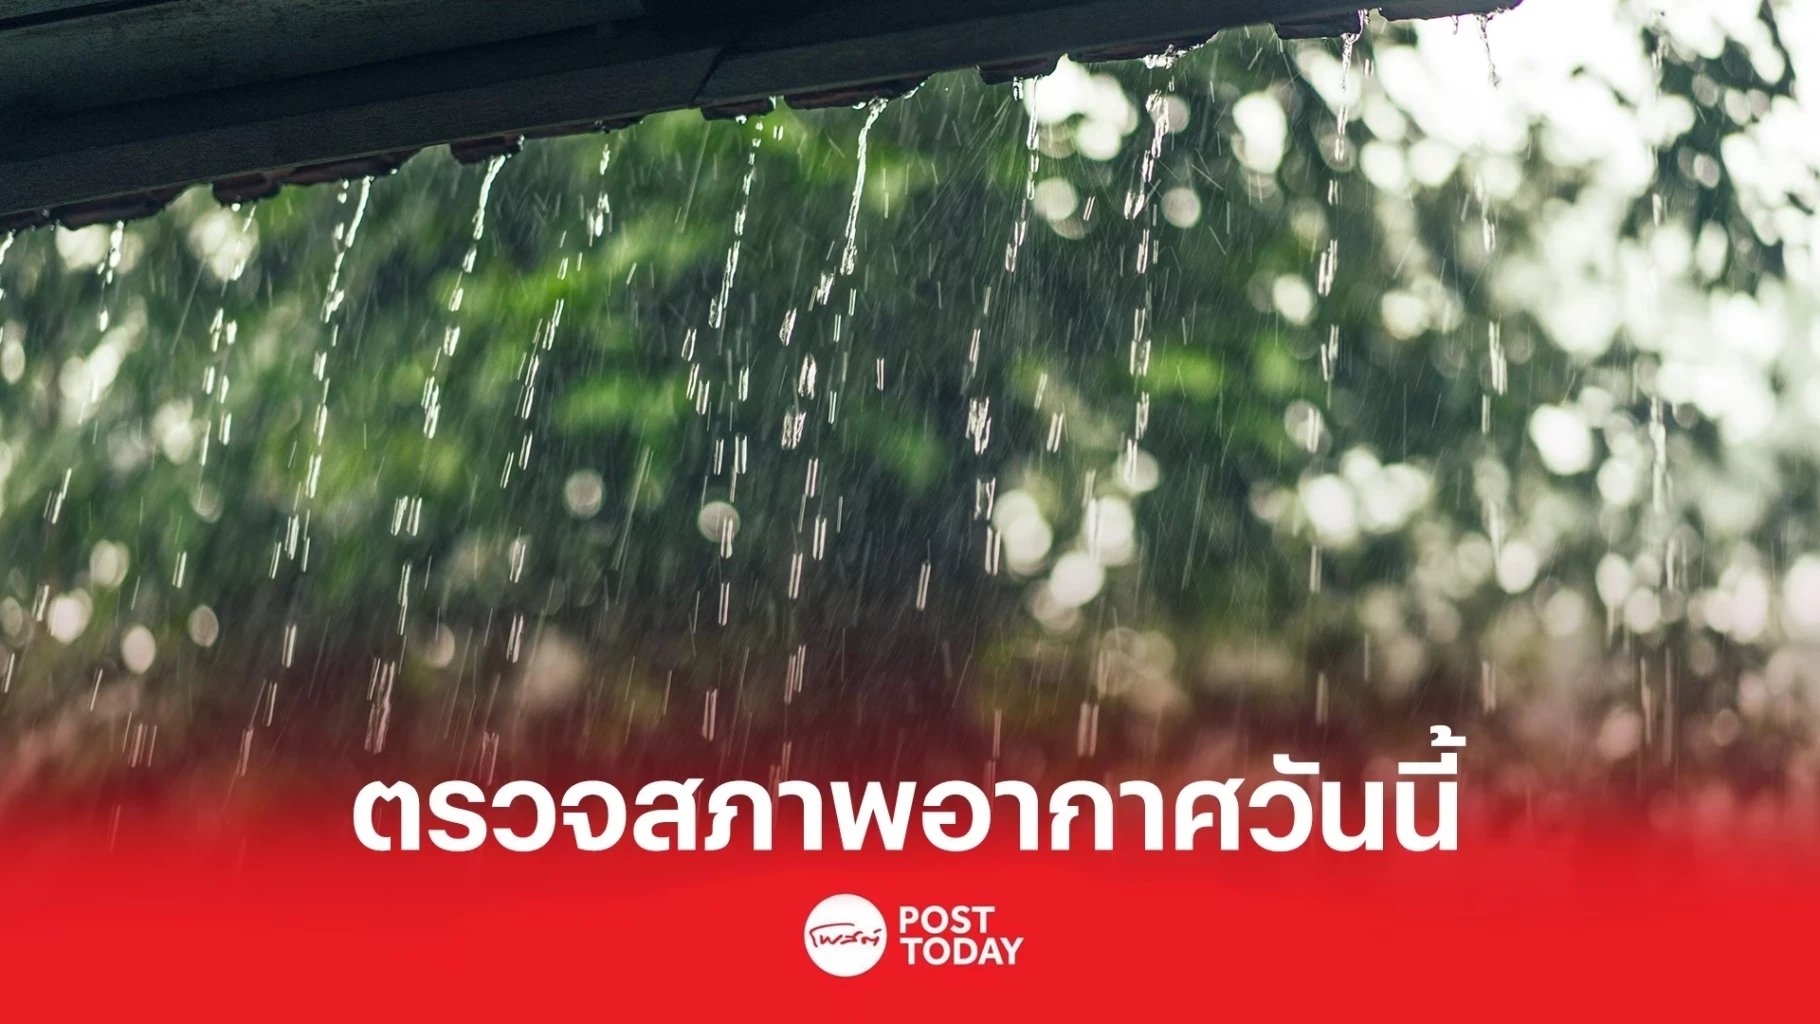 กรมอุตุฯ รายงานอากาศวันนี้ ทั่วไทยมีฝนฟ้าคะนอง ตกหนักสุด60%